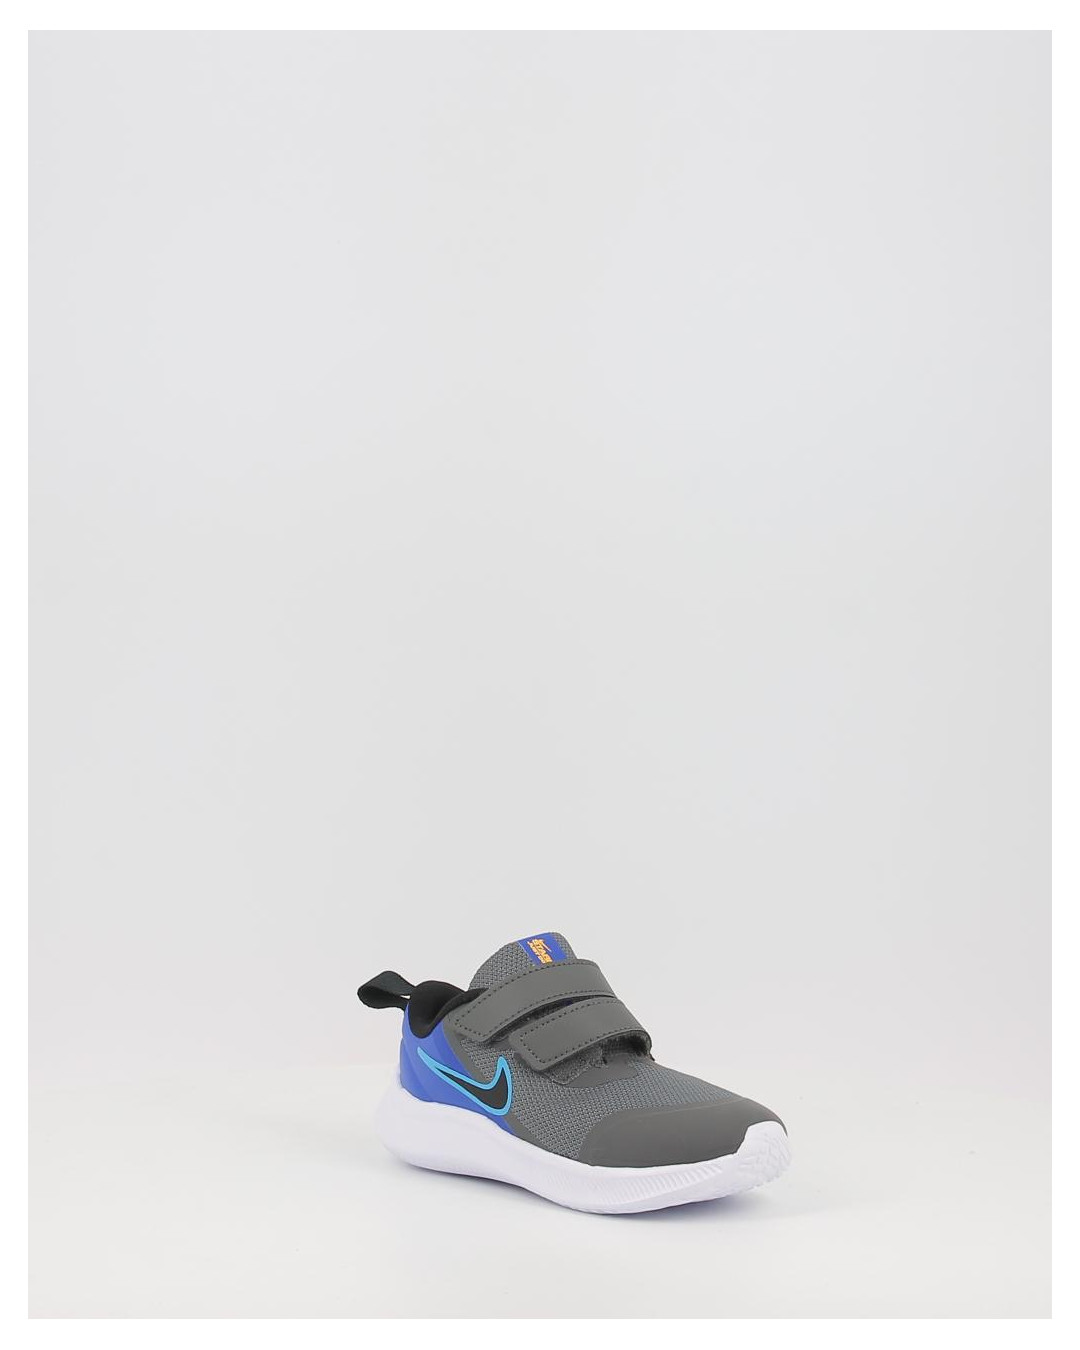 Zapatillas Sneakers Con Plataforma Alta Mujer Moda 2018 - $ 1.300,00 en  Mercado Libre